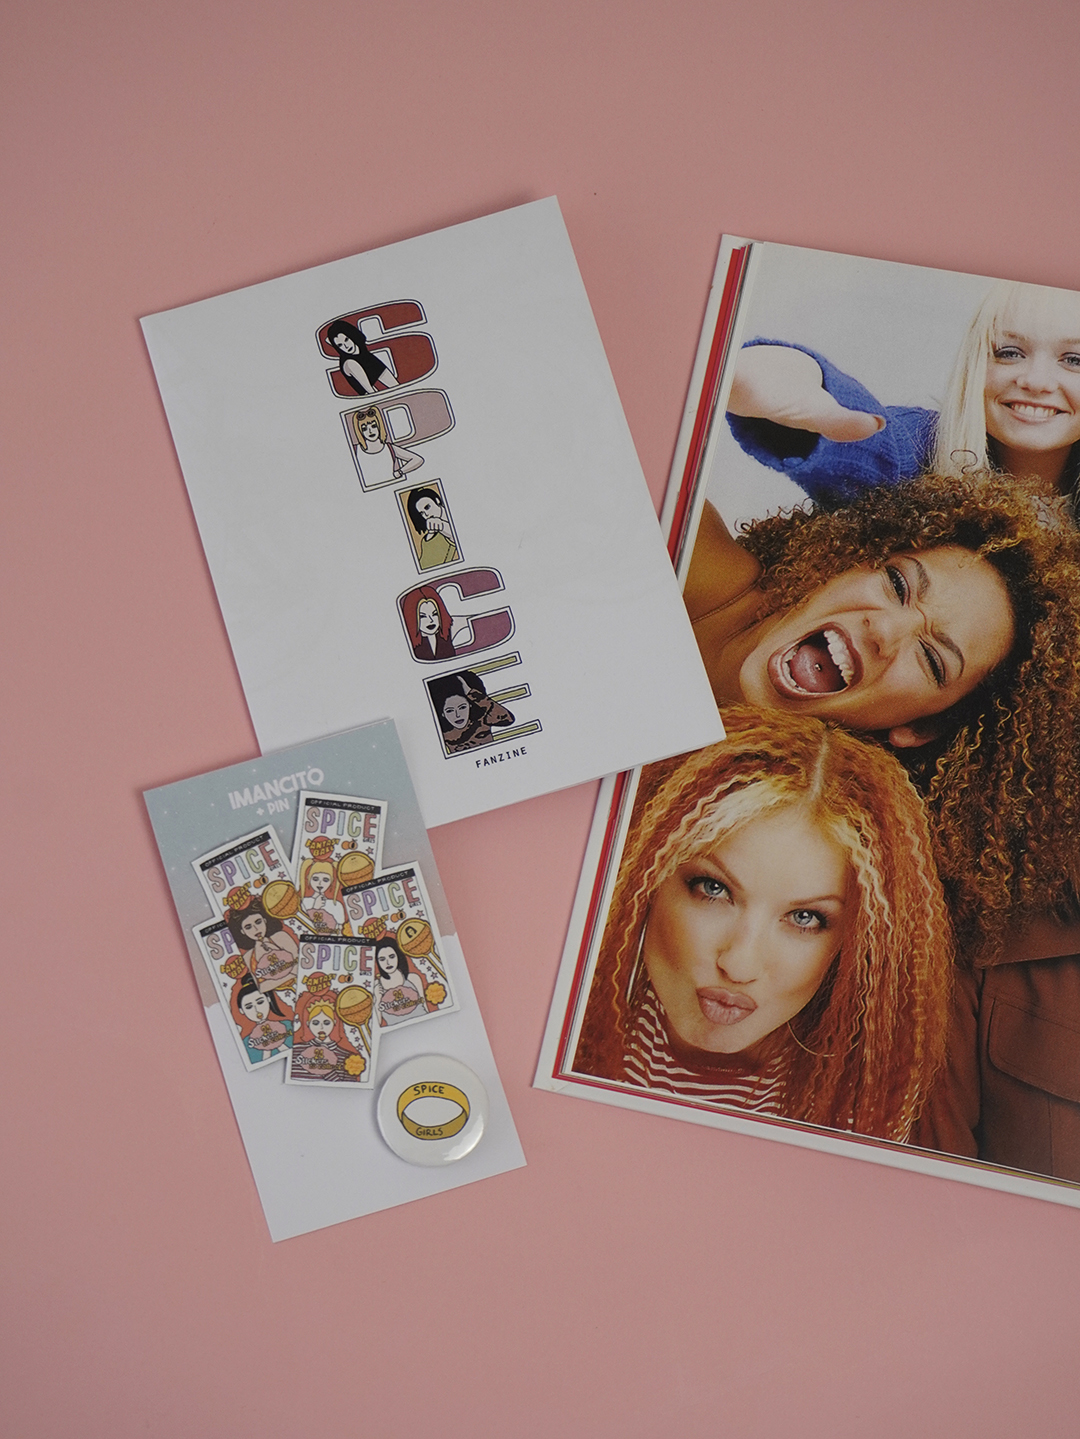 Fanzine - Spice Girls